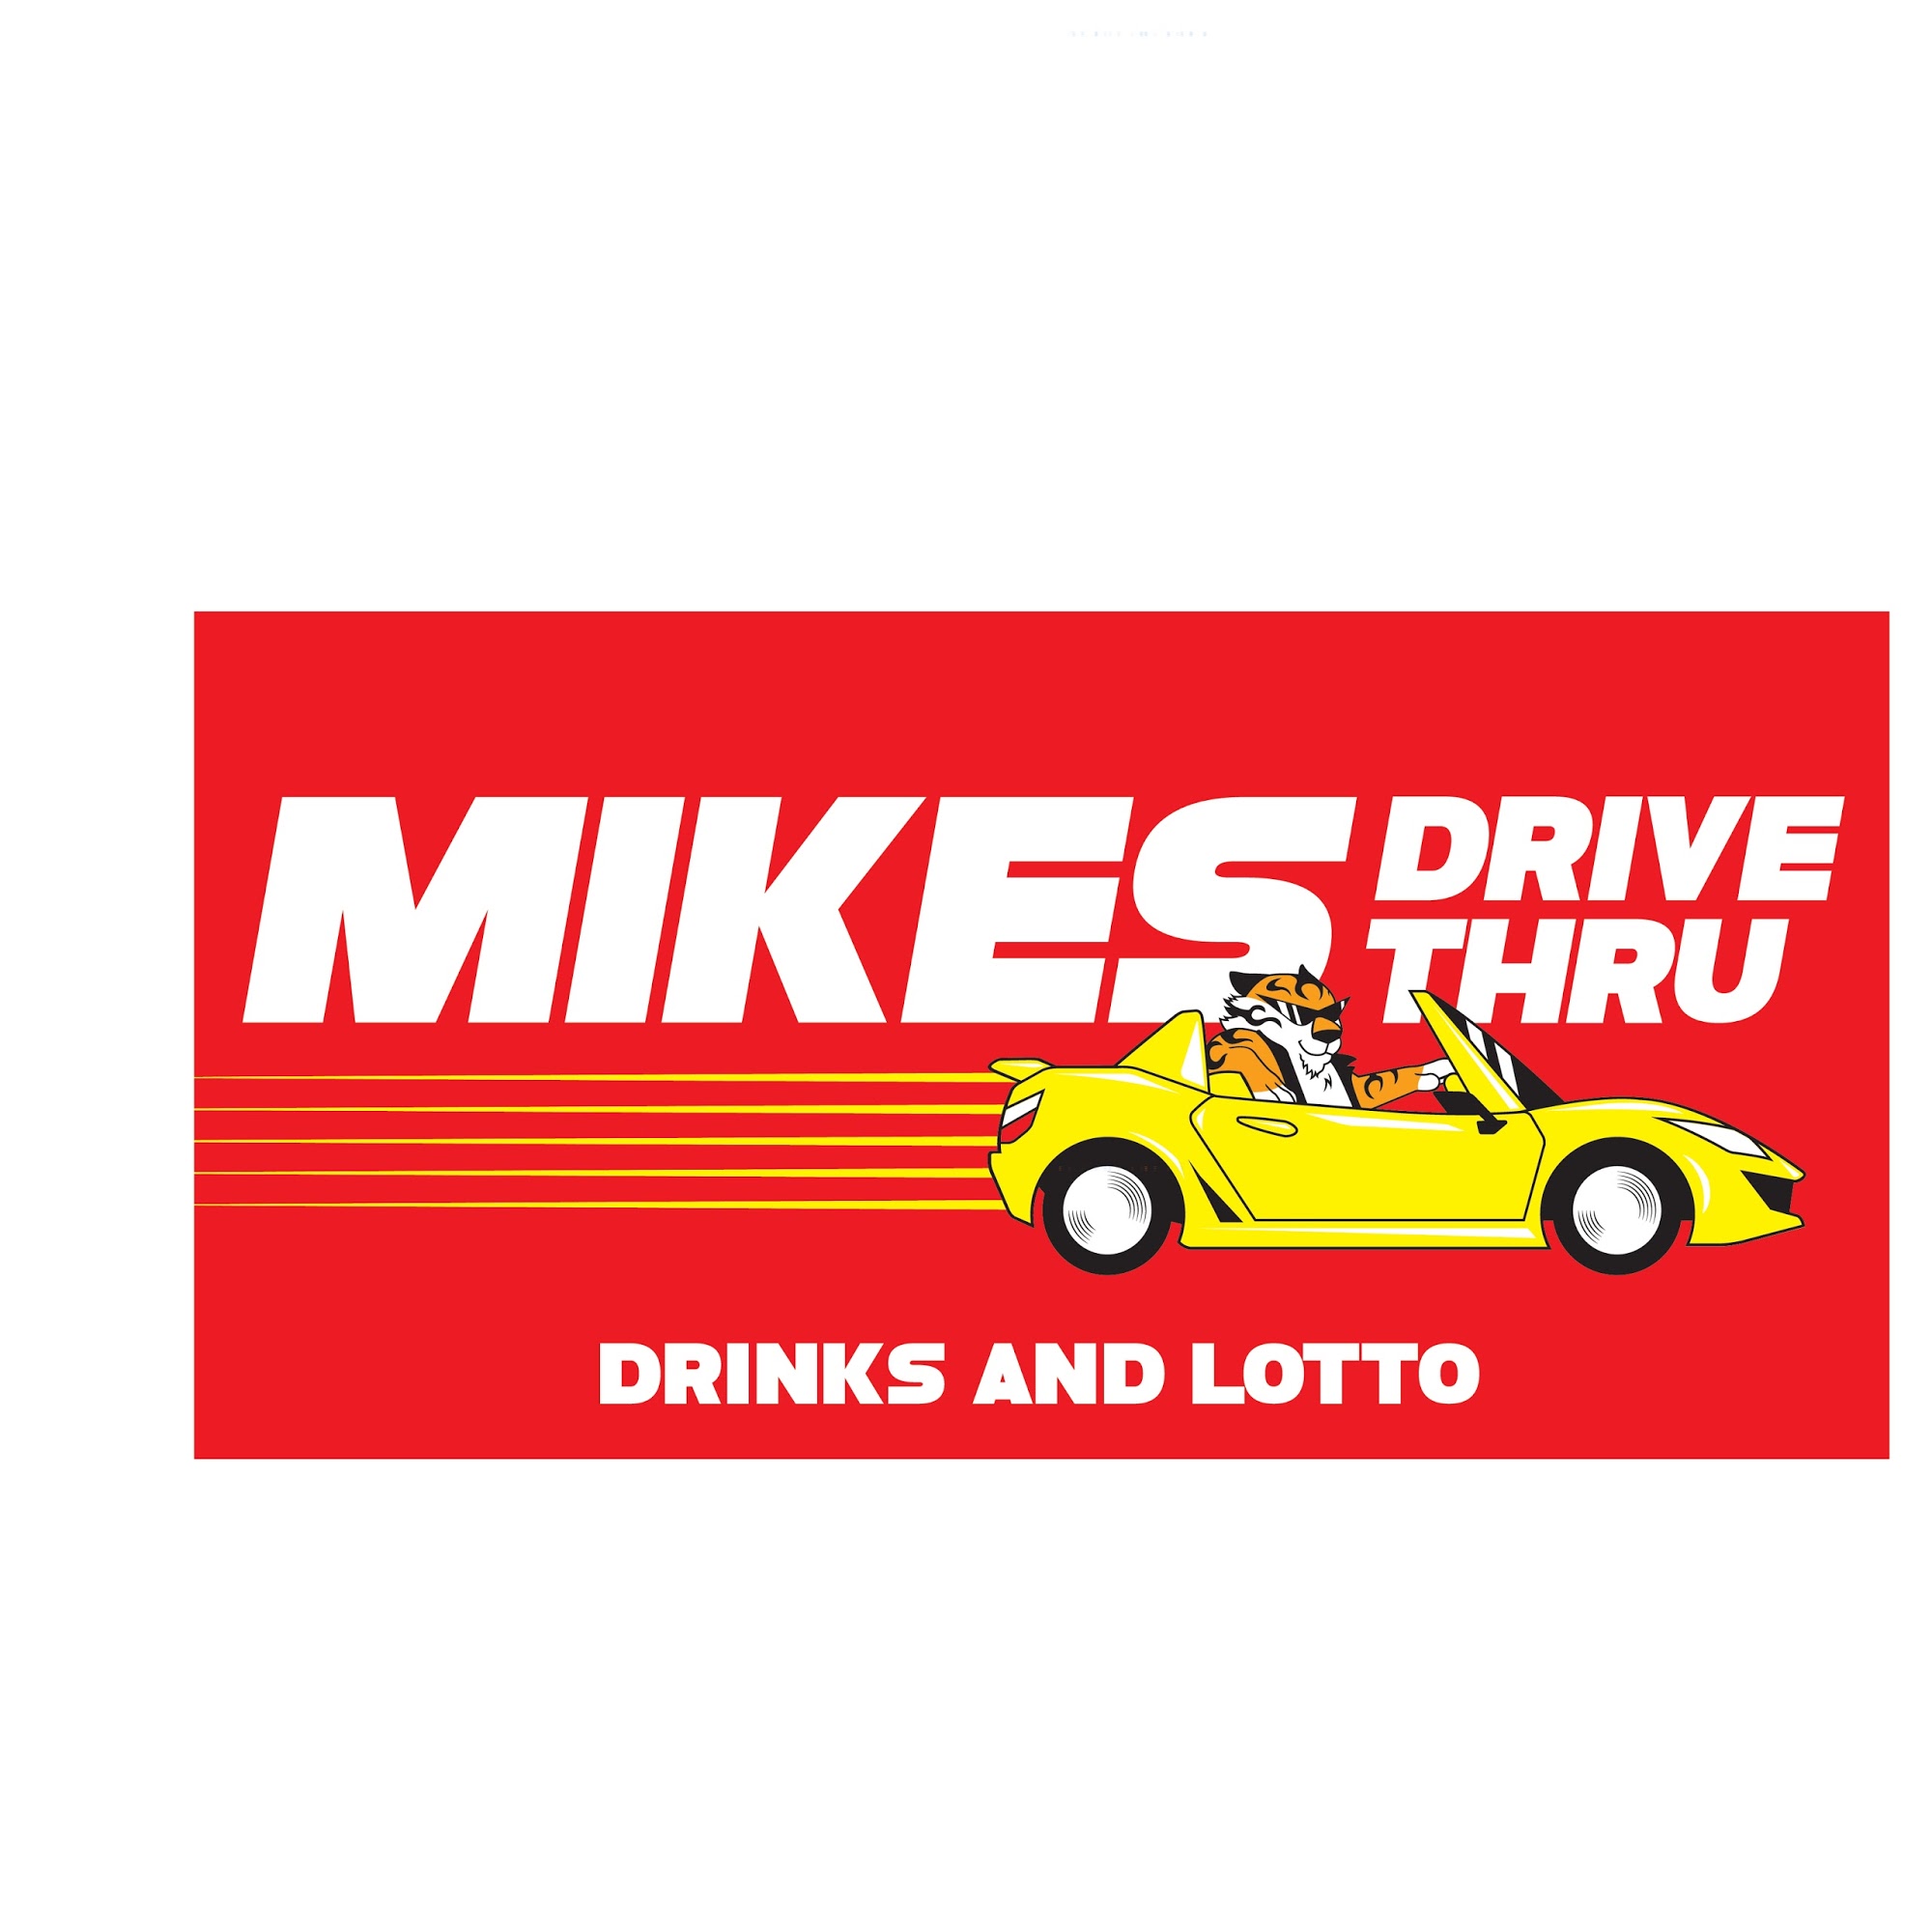 Mikes Drive Thru